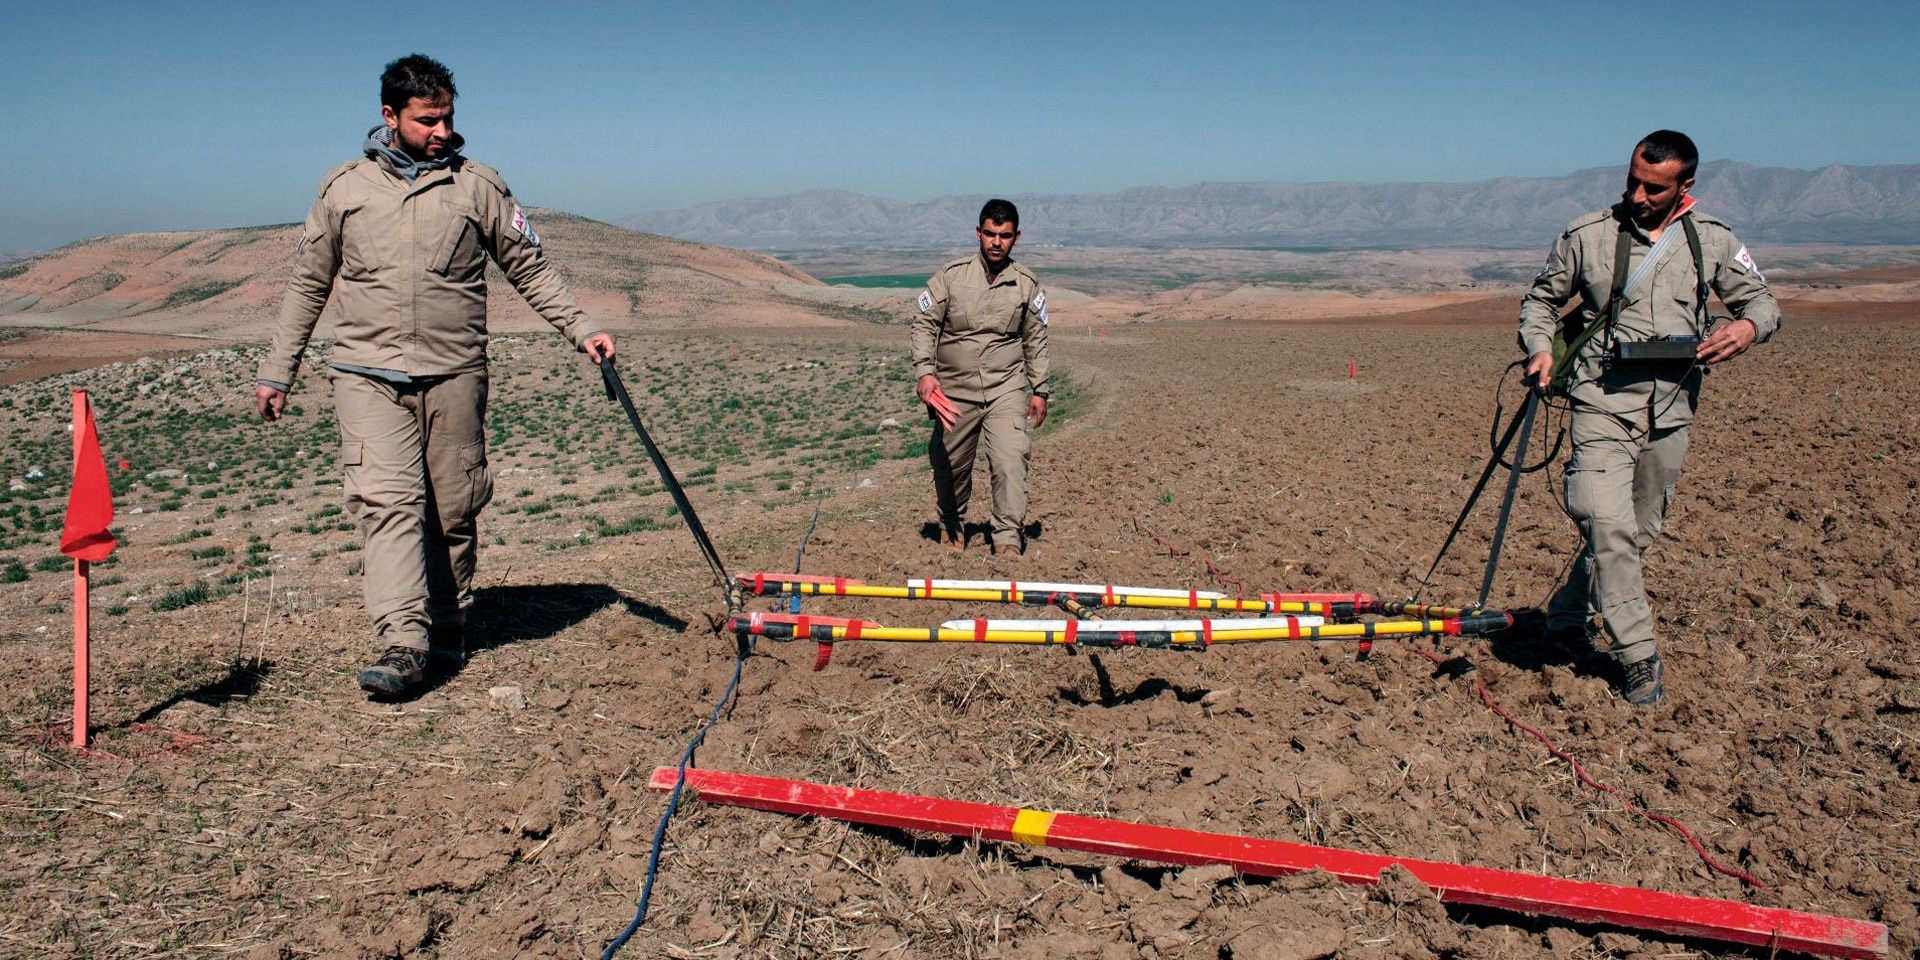  Tre uomini in uniforme bonificano un campo nel deserto iracheno.